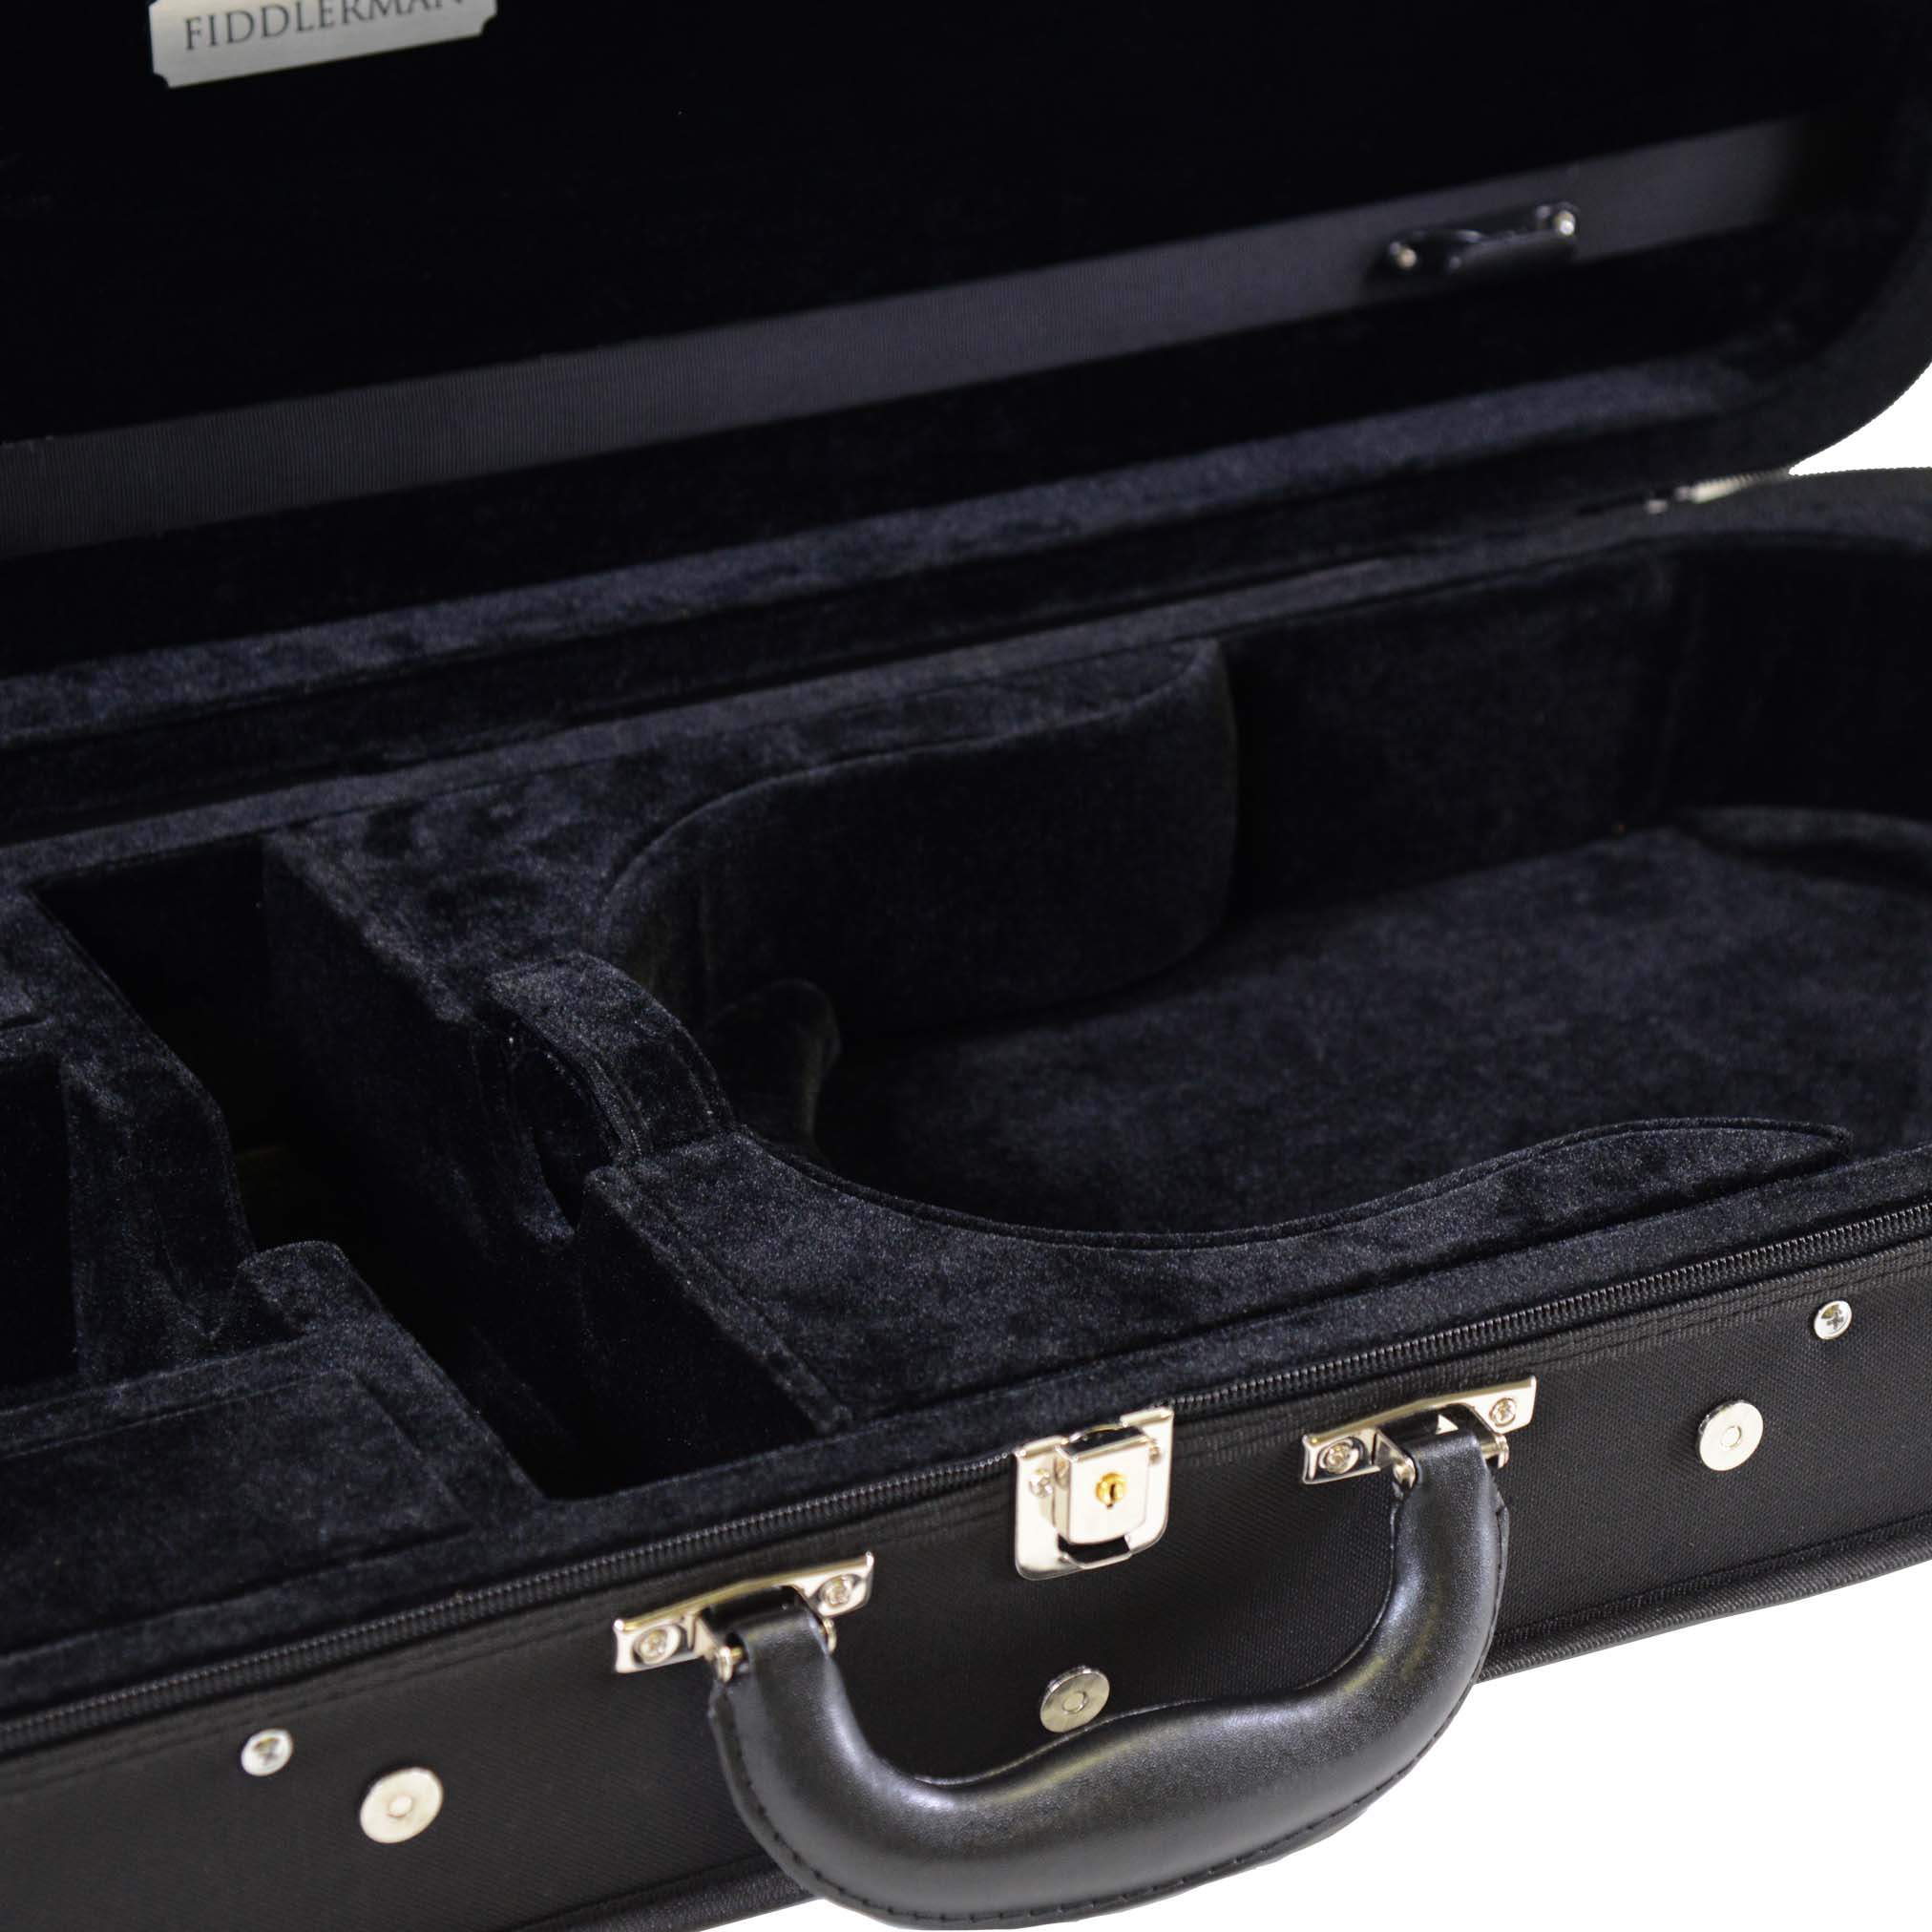 Fiddlerman FC30 Oblong Adjustable Viola Case